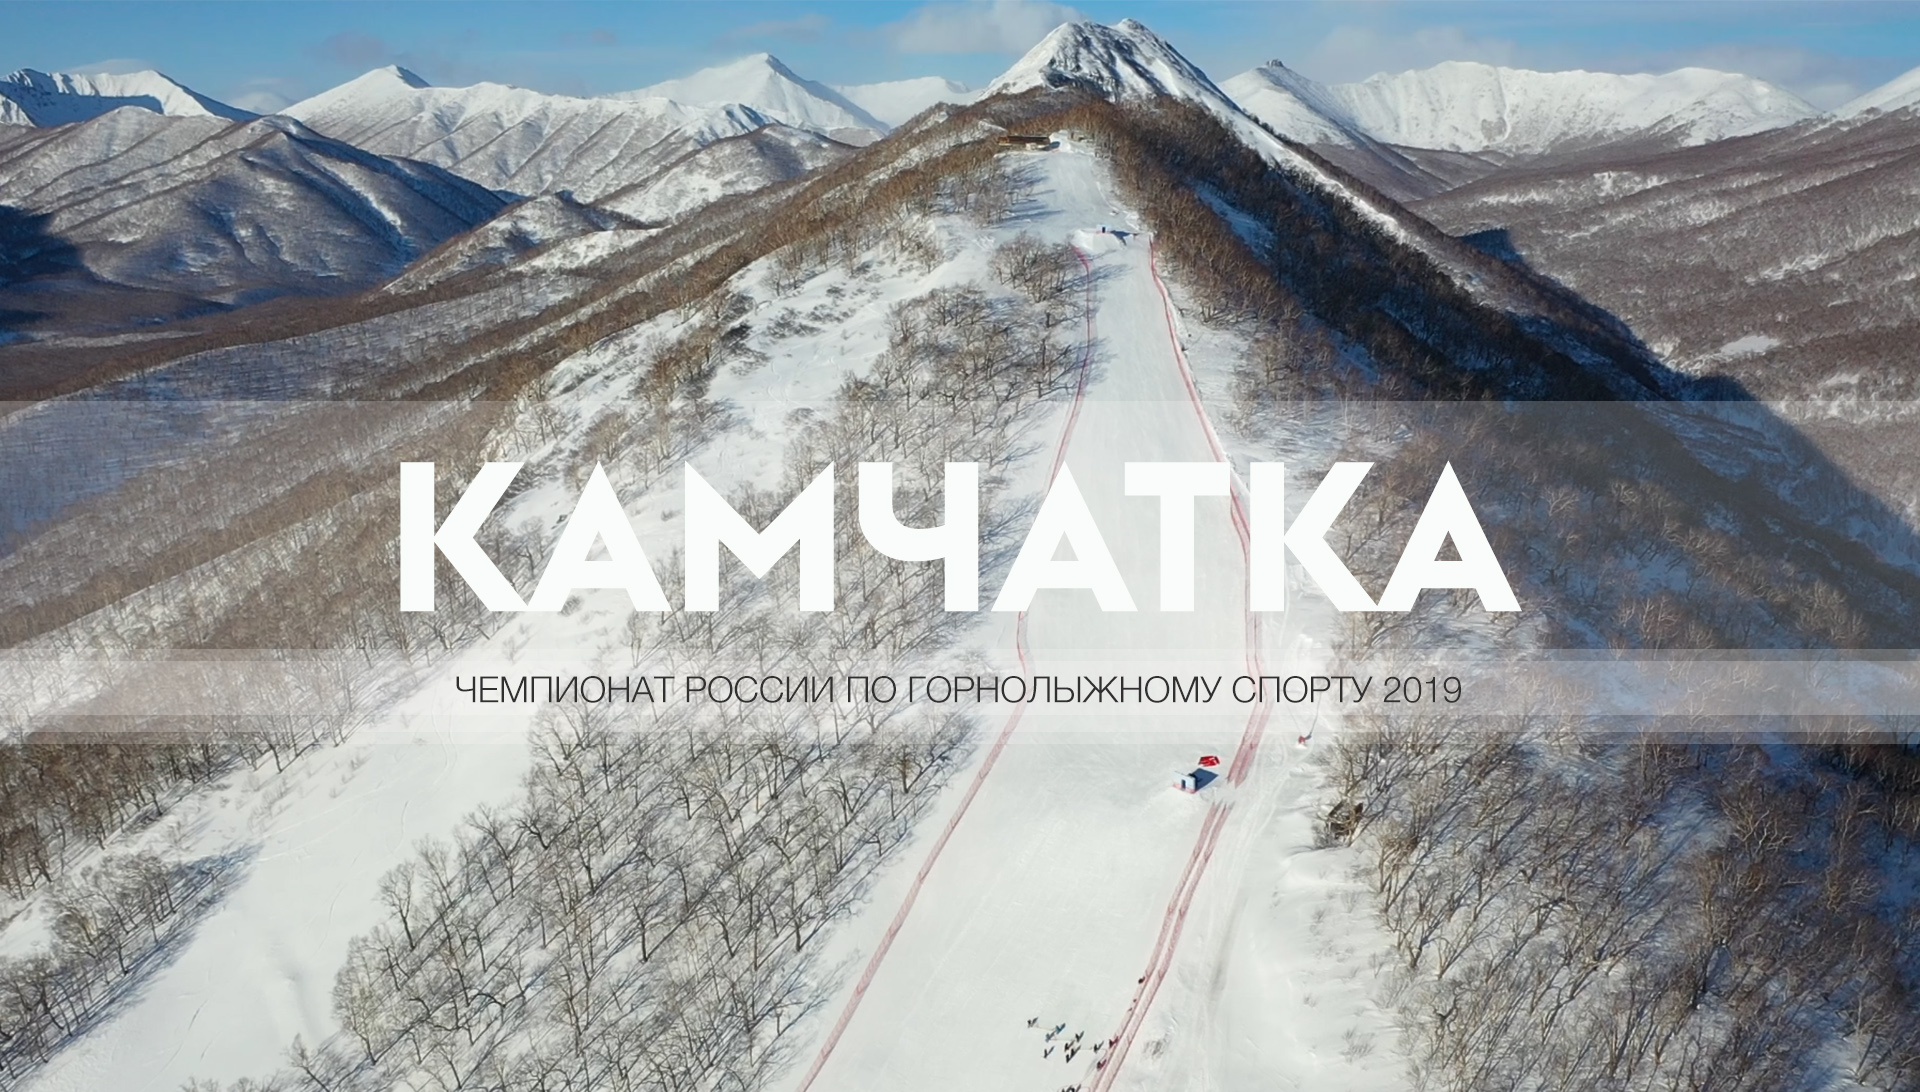 Камчатка 2019 - чемпионат России по горнолыжному спорту